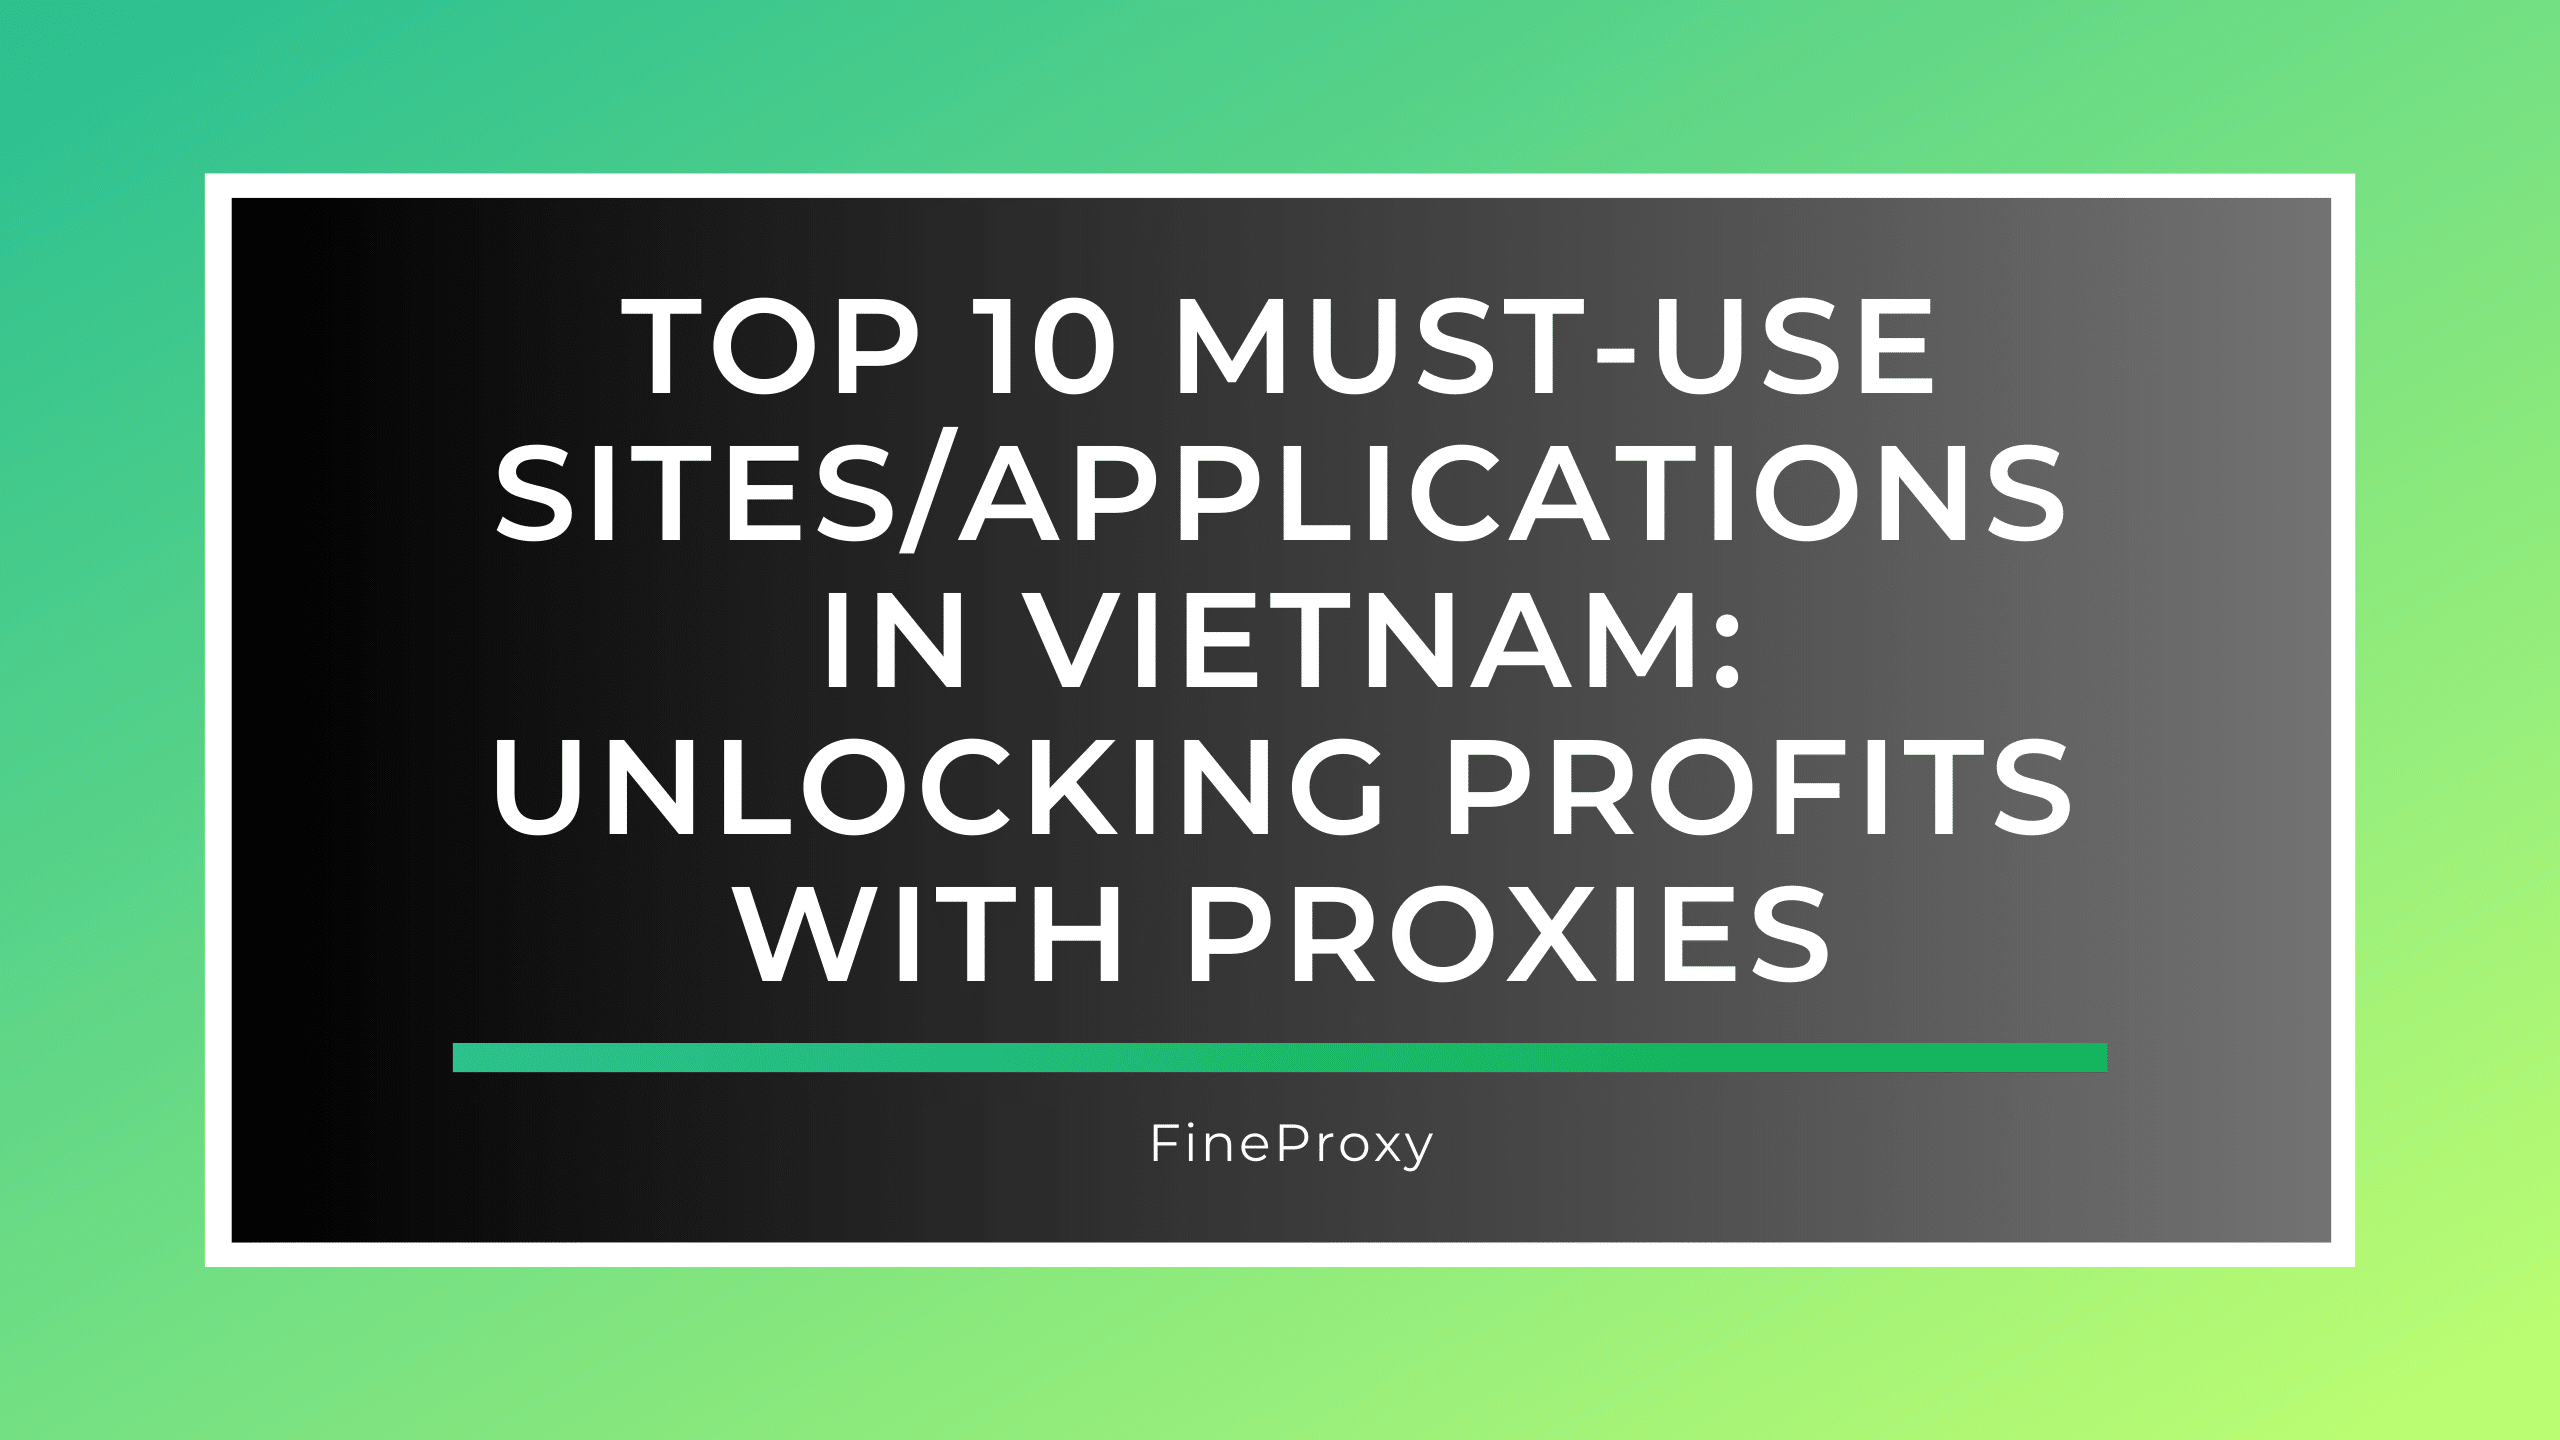 베트남에서 꼭 사용해야 하는 상위 10개 사이트/애플리케이션: 프록시를 통해 수익 창출